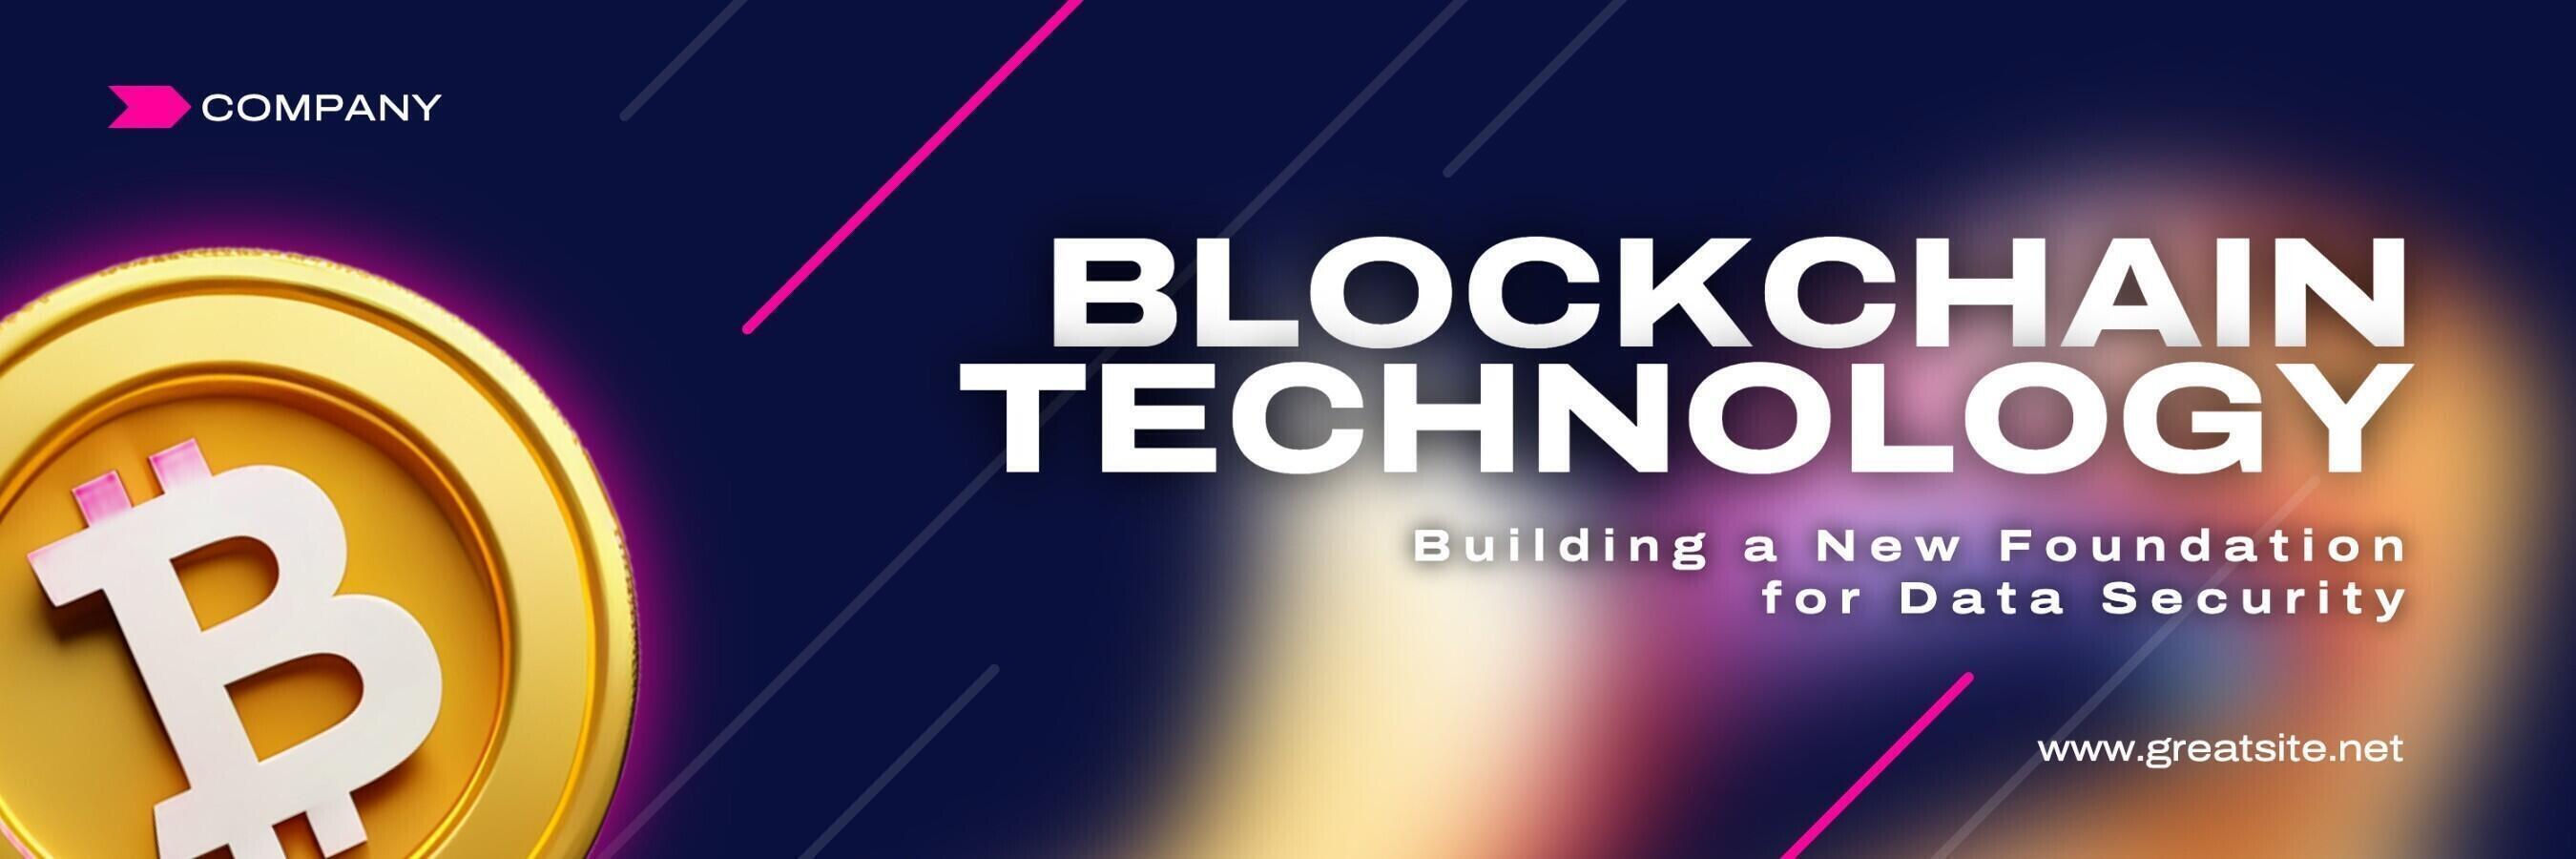 Blockchain Technology Twitter Banner template